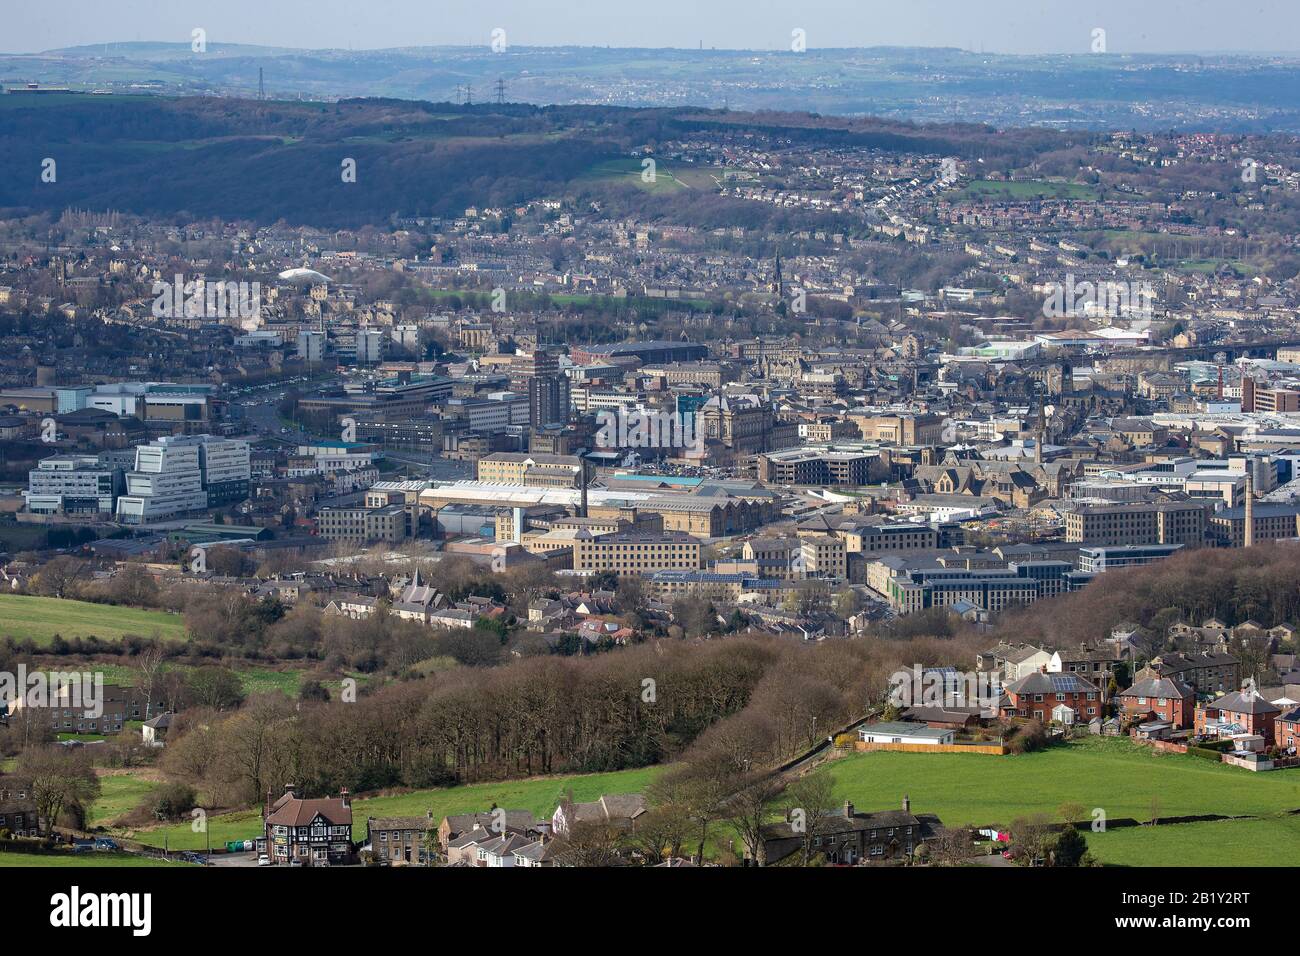 Une vue aérienne De Huddersfield une grande ville de marché dans le West Yorkshire au pied de la chaîne de montagnes Pennine où se rencontrent le Colne et Holme. Banque D'Images